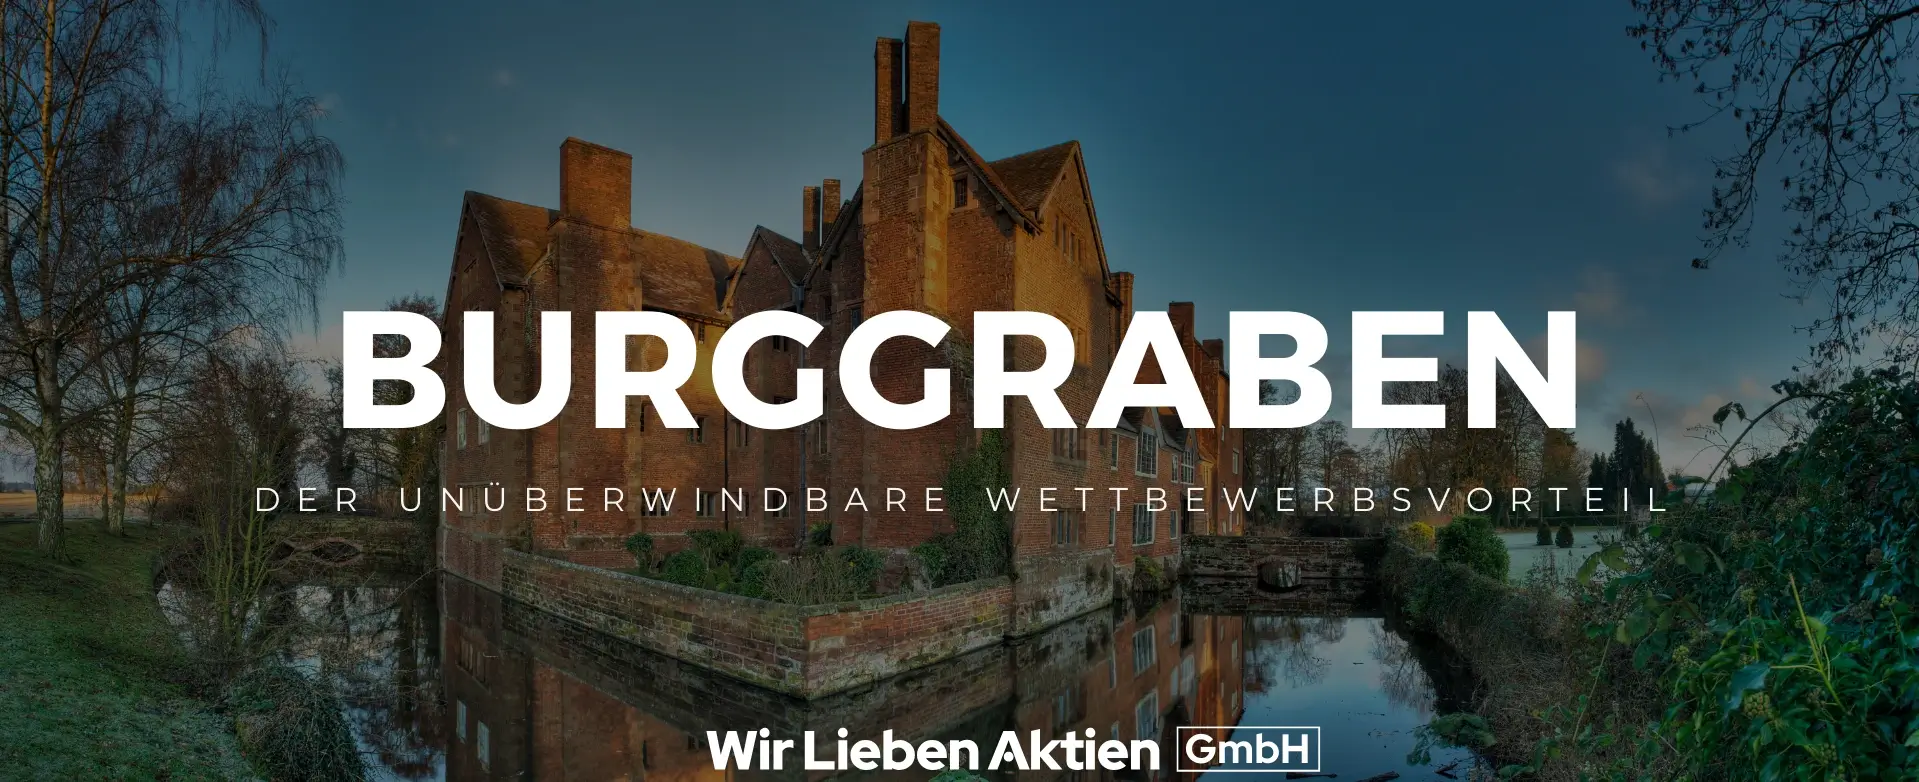 Burggraben-aktien-definition-einleitungsbild